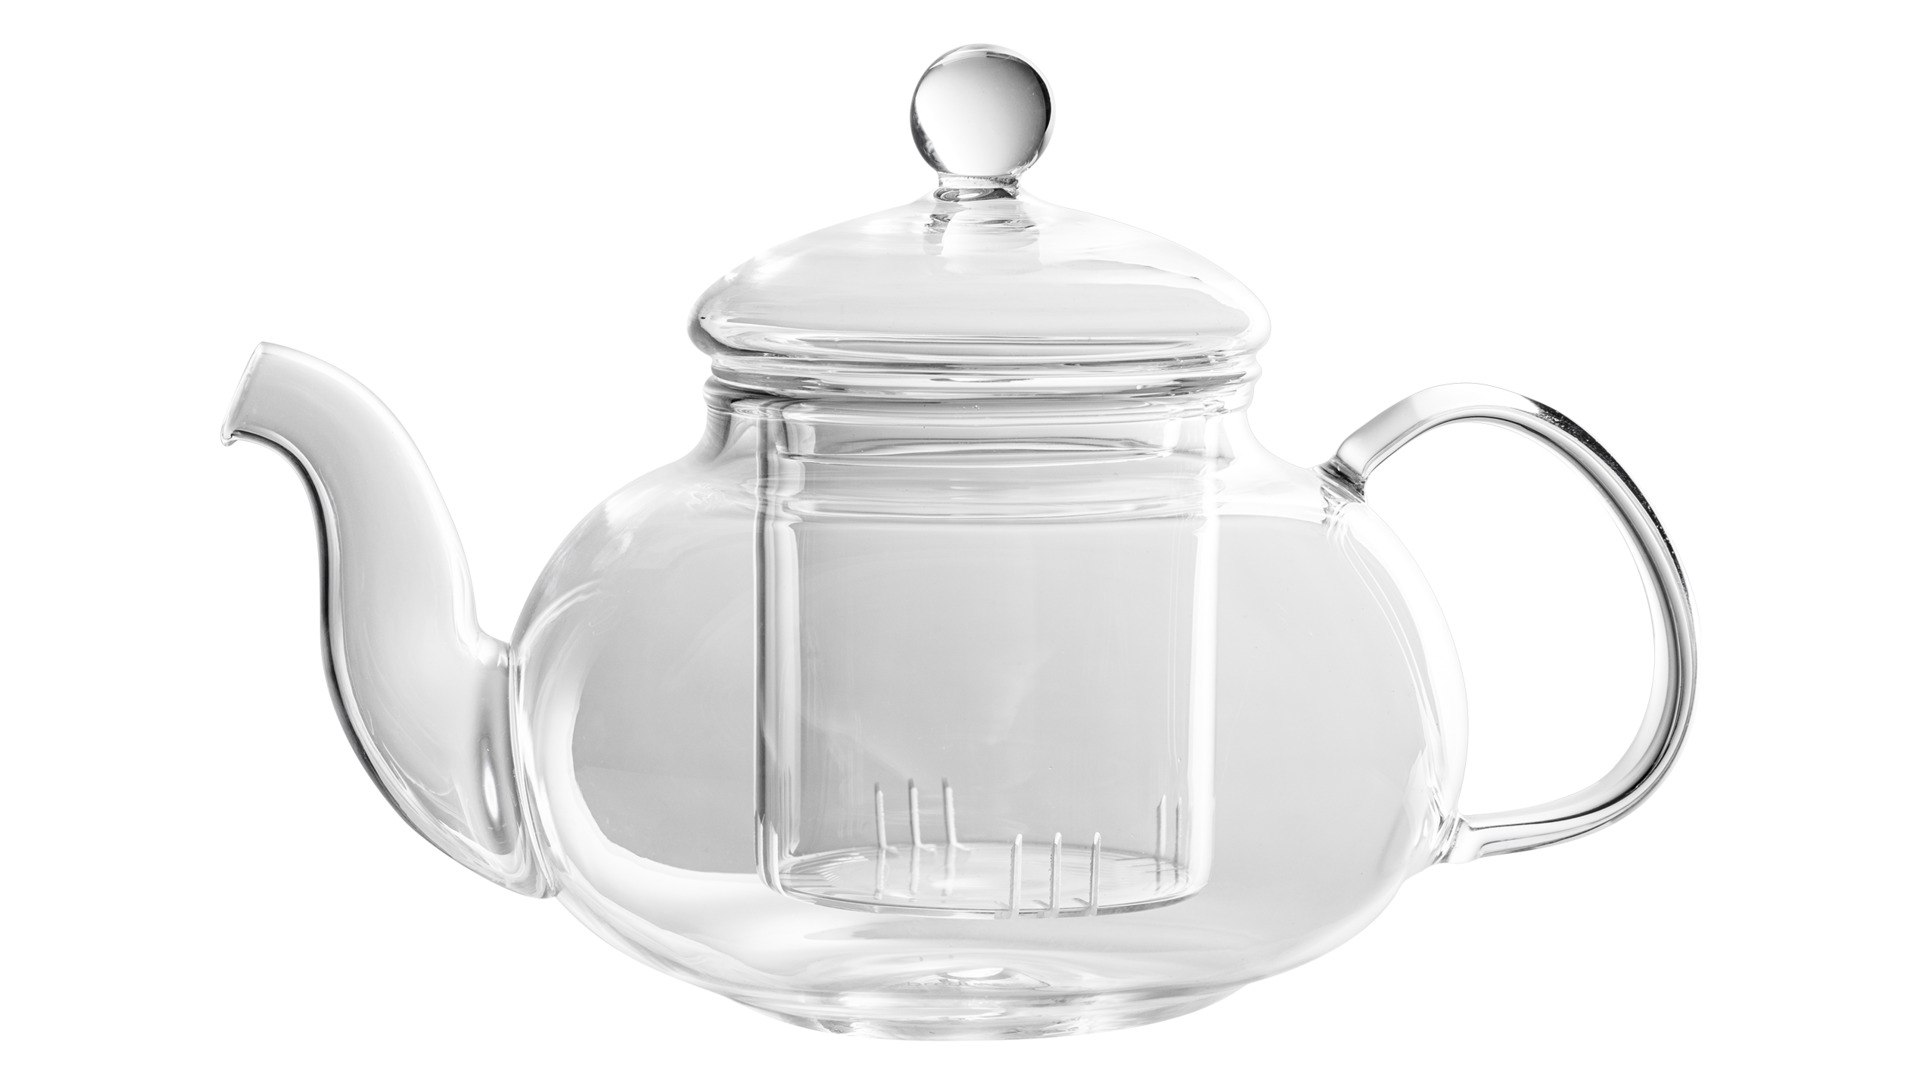 Чайник заварочный Bredemeijer Verona со стеклянным фильтром для связанного чая 500 мл, стекло